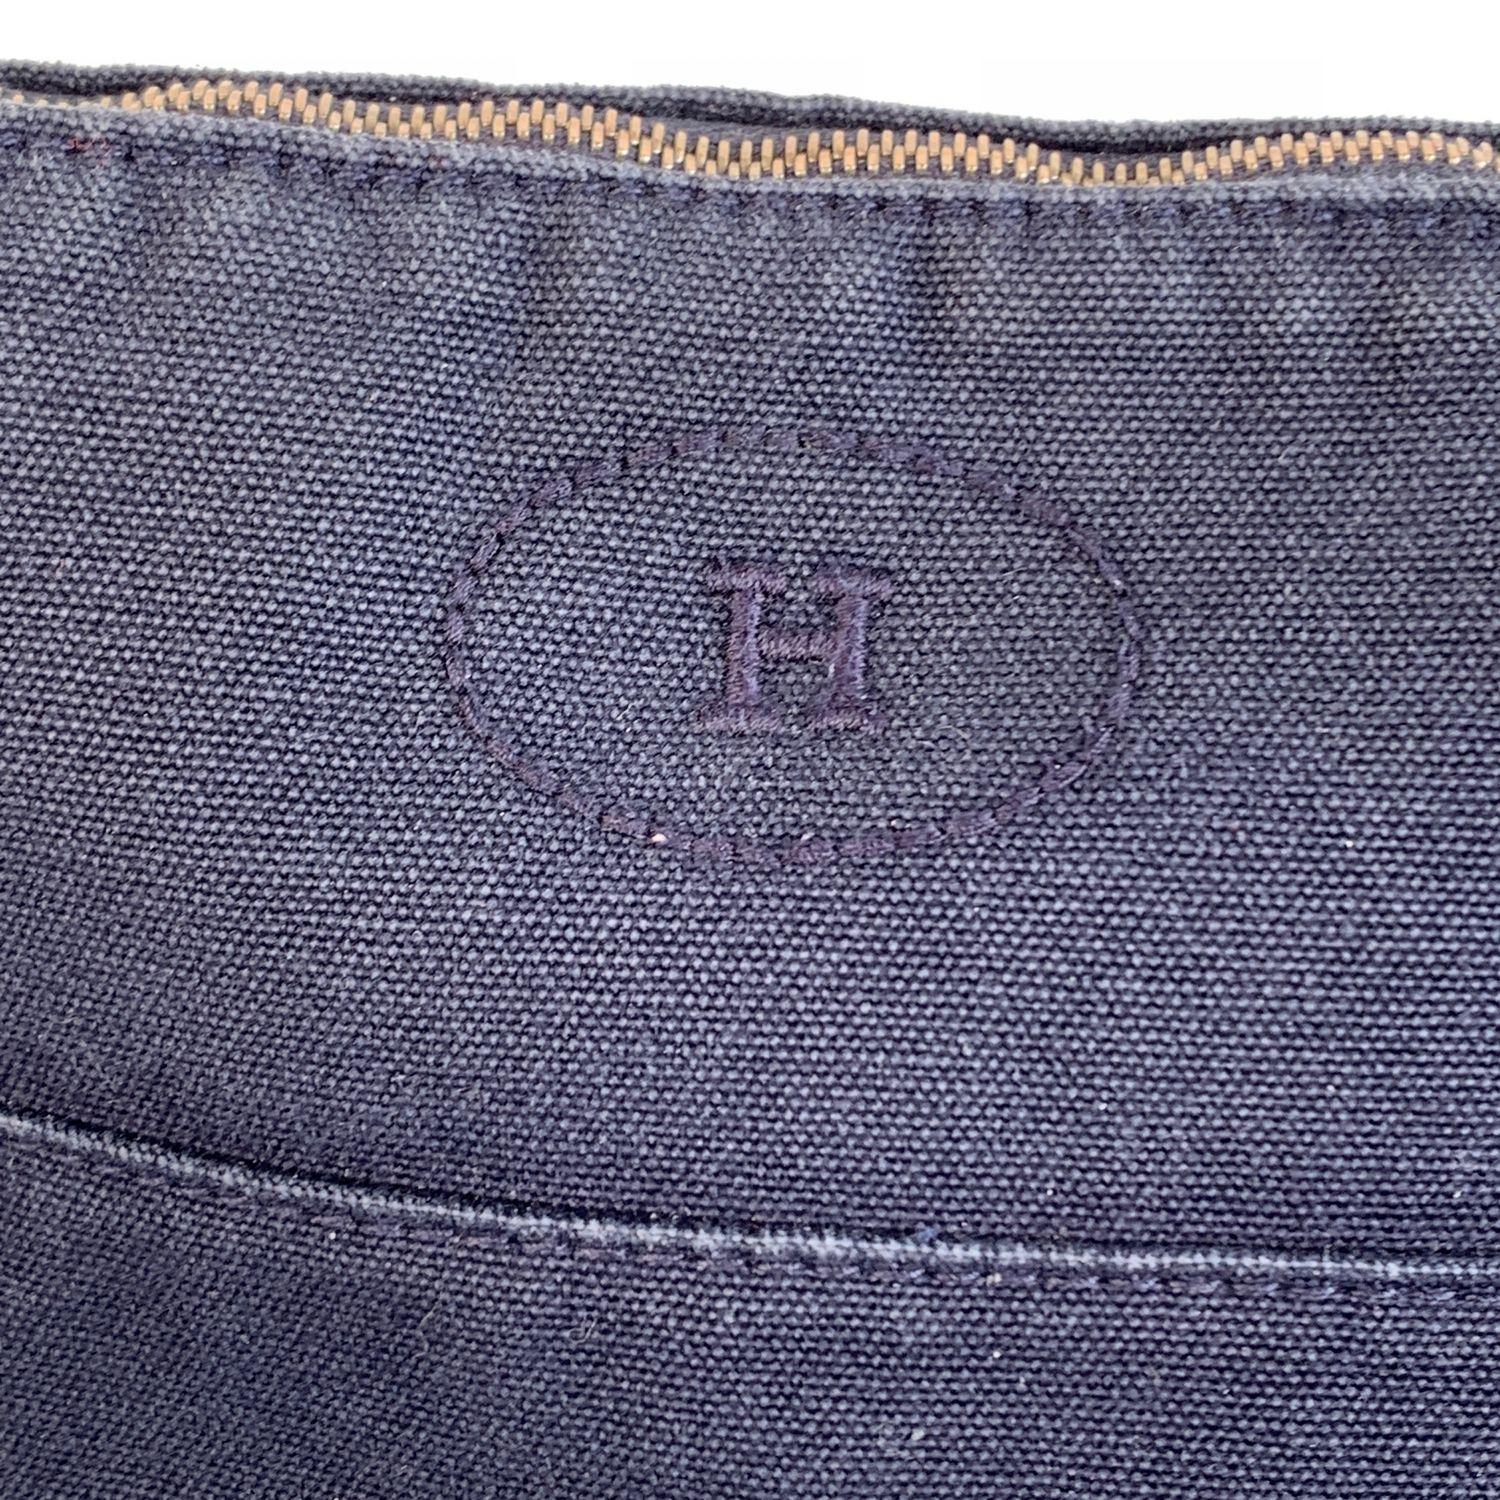 Hermes Paris Blue Cotton Canvas Bolide Travel Case Cosmetic Bag 1